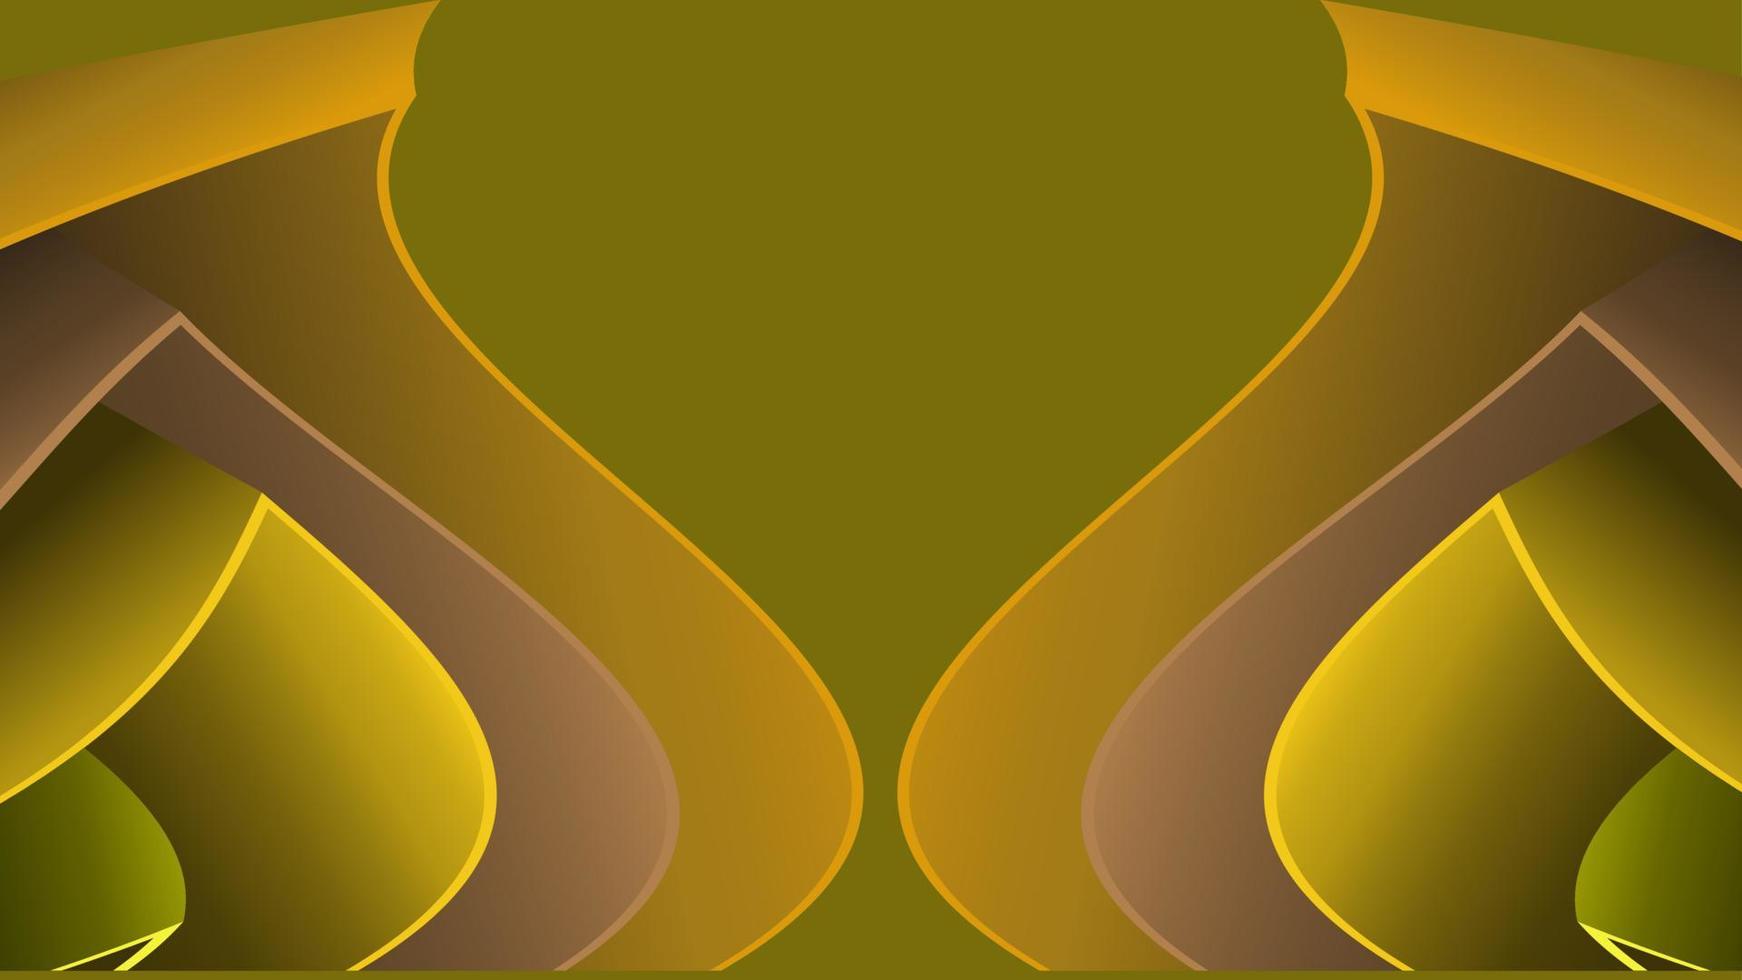 geométrico ondulado sobre fondo amarillo. composición de formas de degradado de moda. eps10 vector